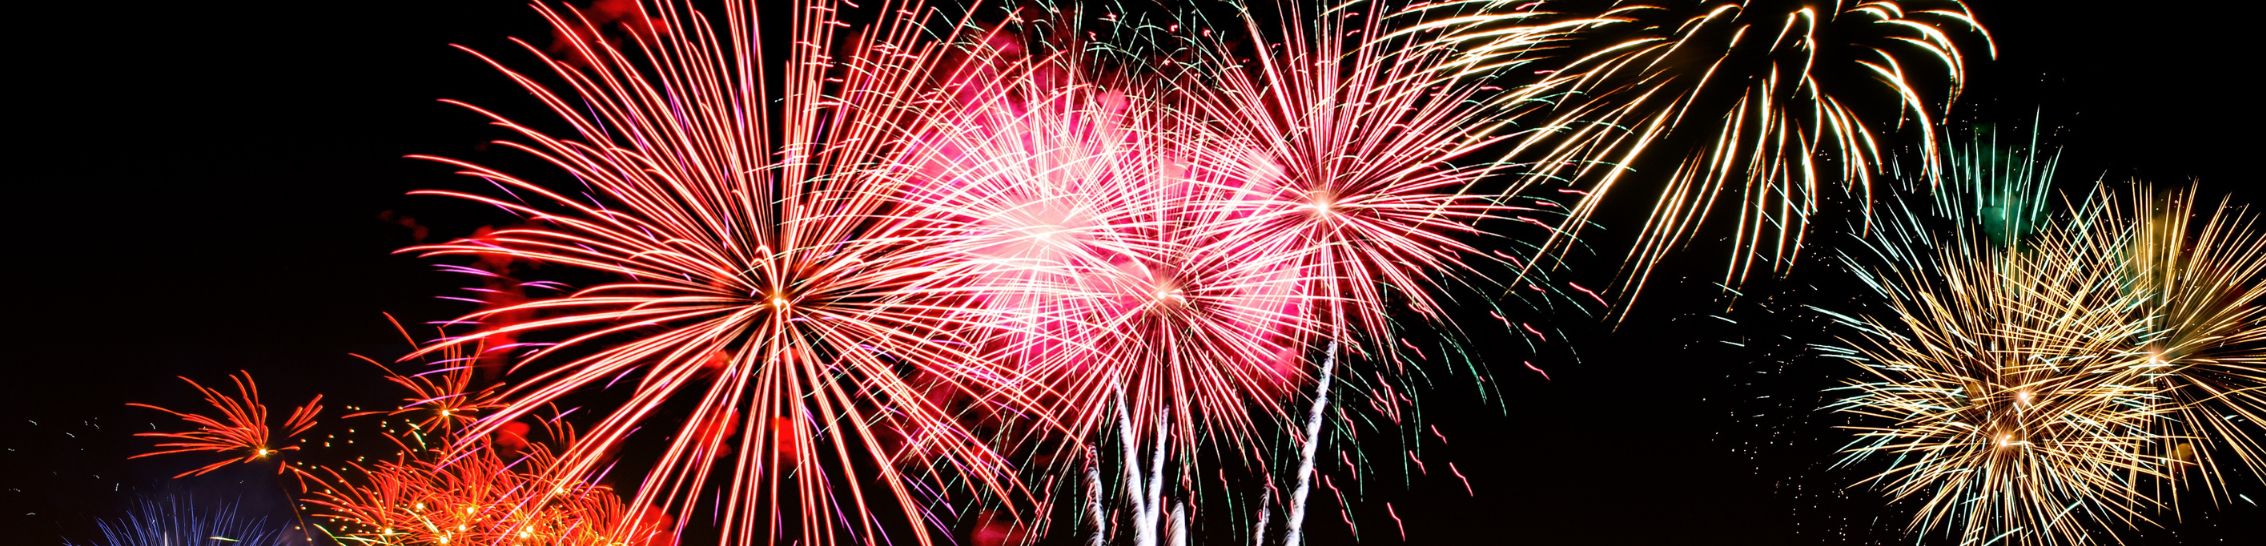 Nouvelle année nouvelle résolutions - Une vue magnifique d'un feu d'artifice éclatant dans le ciel pour célébrer la nouvelle année et marquer le début de nouvelles résolutions. Les explosions colorées illuminent le ciel nocturne, créant un spectacle féerique et spectaculaire. Cet événement joyeux rassemble la communauté dans un esprit de célébration et de renouveau, inspirant à chacun de faire de nouveaux projets et de prendre de nouvelles résolutions pour l'année à venir.